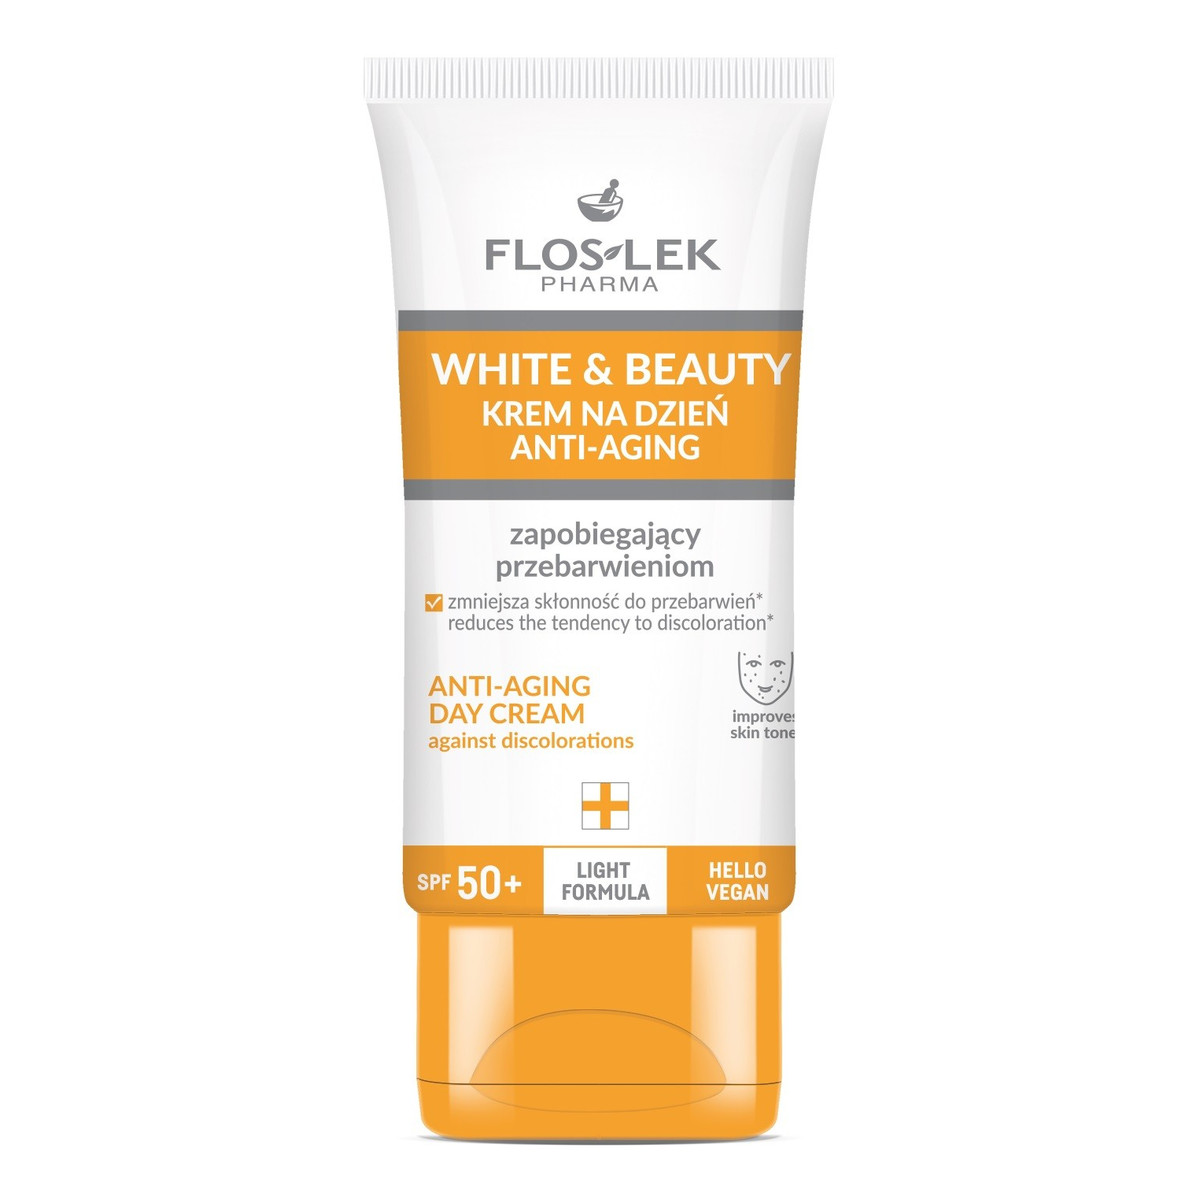 FlosLek FLOSLEK Pharma White&Beauty Krem na dzień anti-aging zapobiegający przebarwieniom spf50+ 50ml